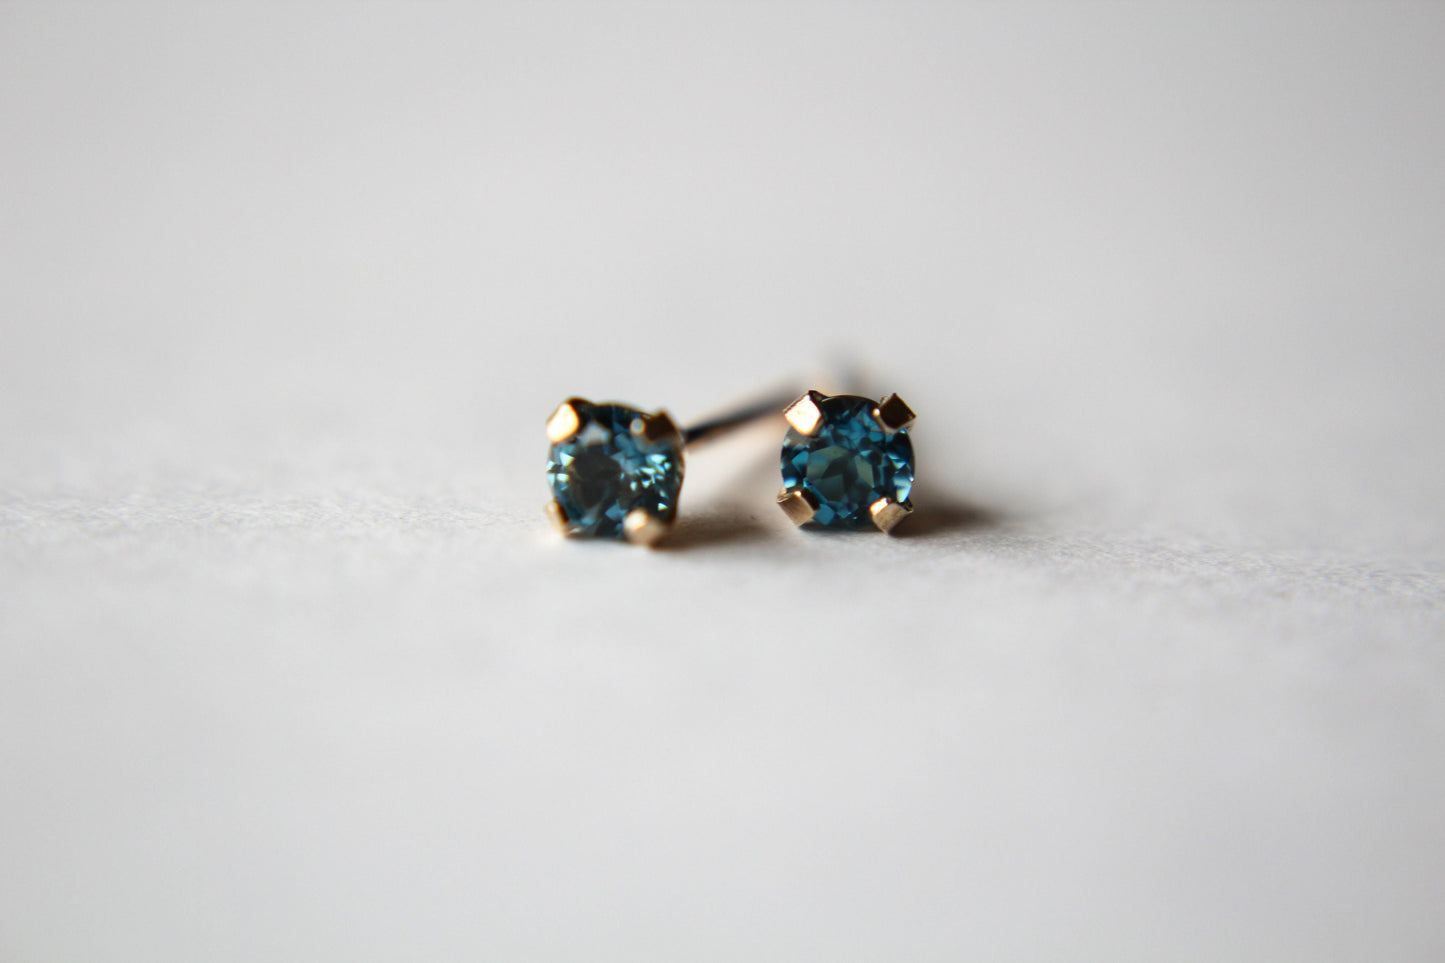 Topaz Earrings, Gold Topaz Earrings, 14k Gold Earrings, Blue Earrings, Topaz Jewelry, Gift, December Birthstone, London Blue Topaz